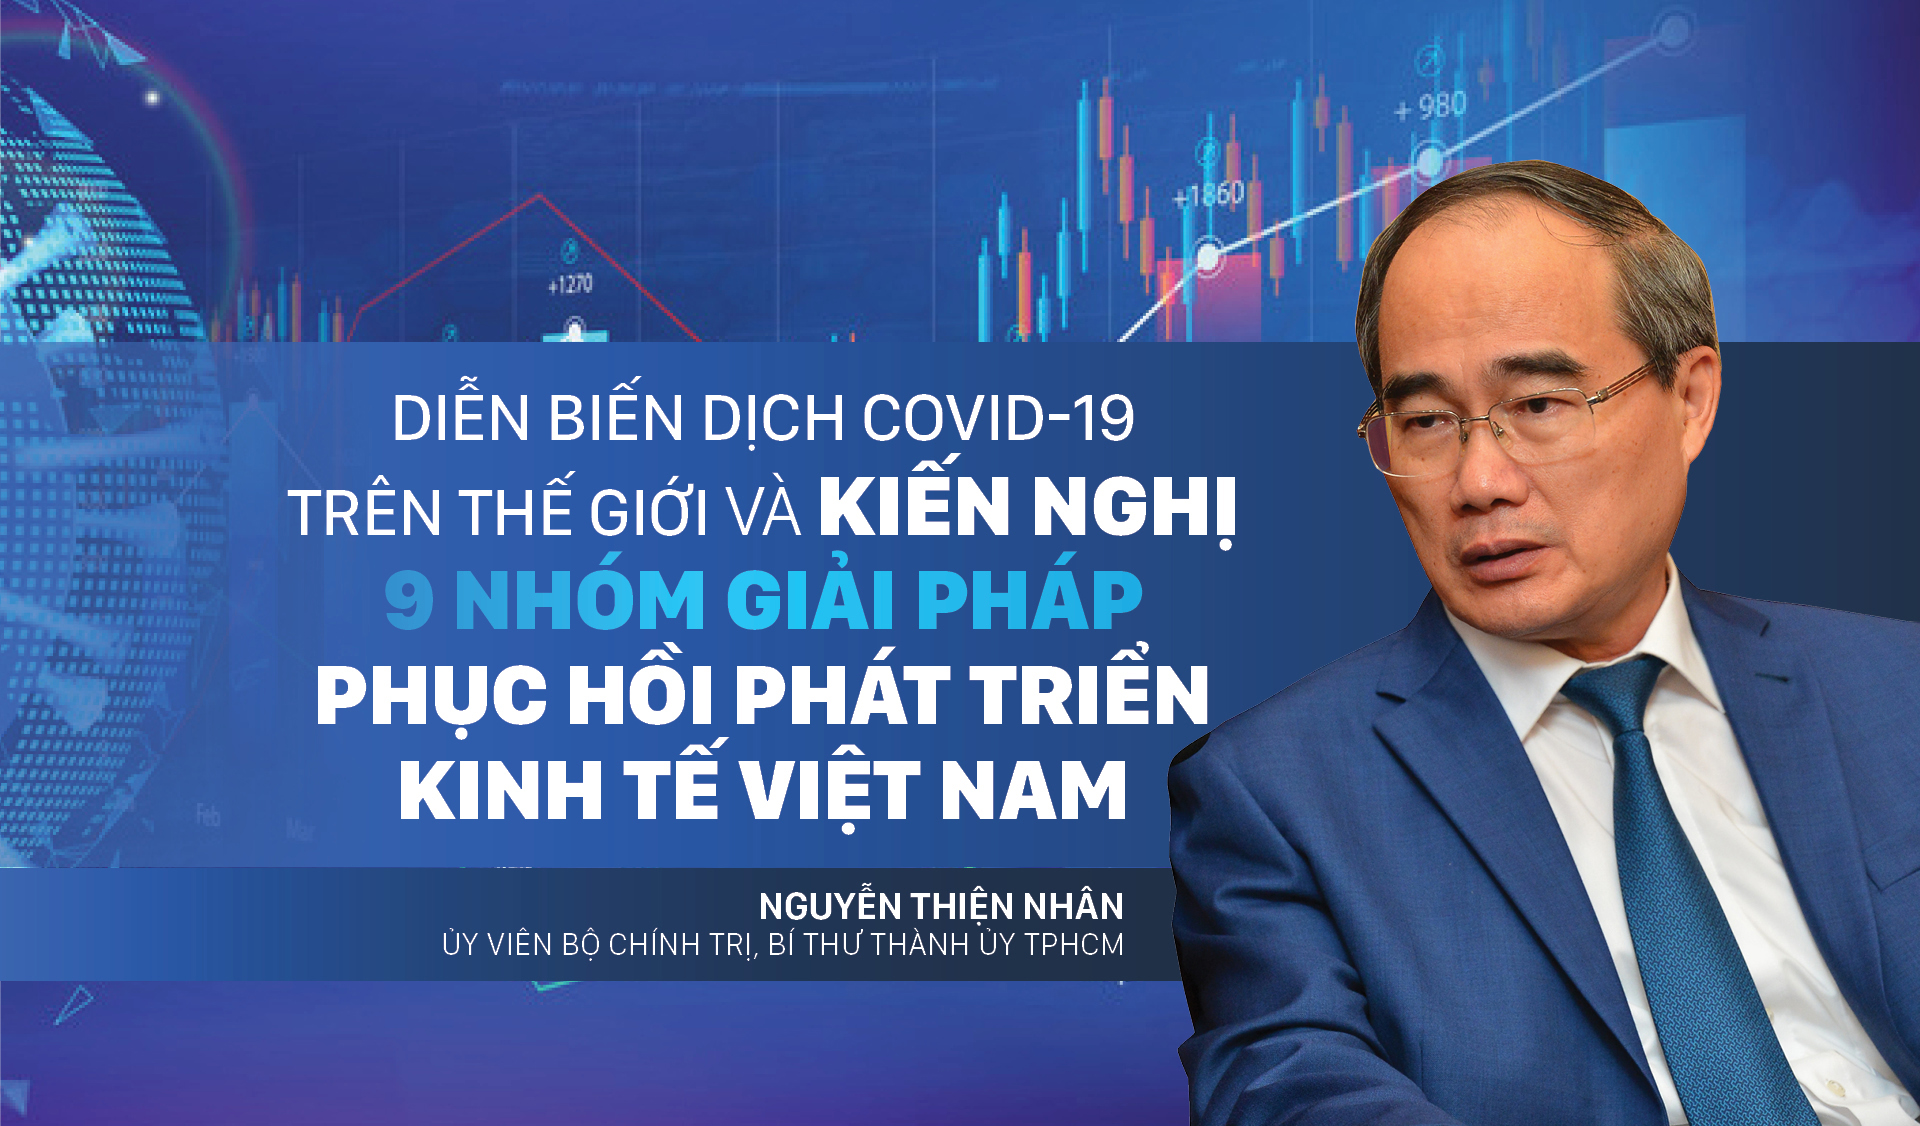 Diễn biến dịch COVID-19 trên thế giới và kiến nghị 9 nhóm giải pháp phục hồi phát triển kinh tế Việt Nam